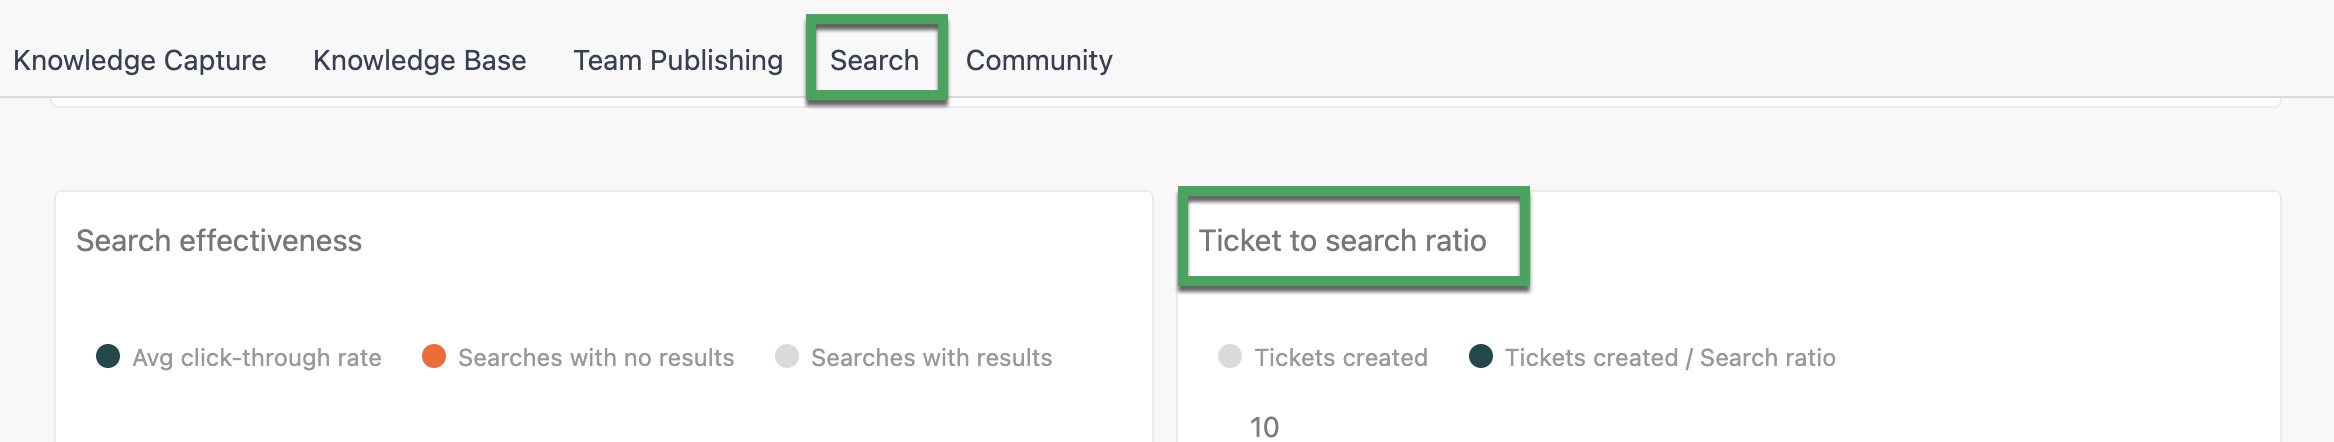 Rapport Ticket/Search ratio dans le tableau de bord Guide